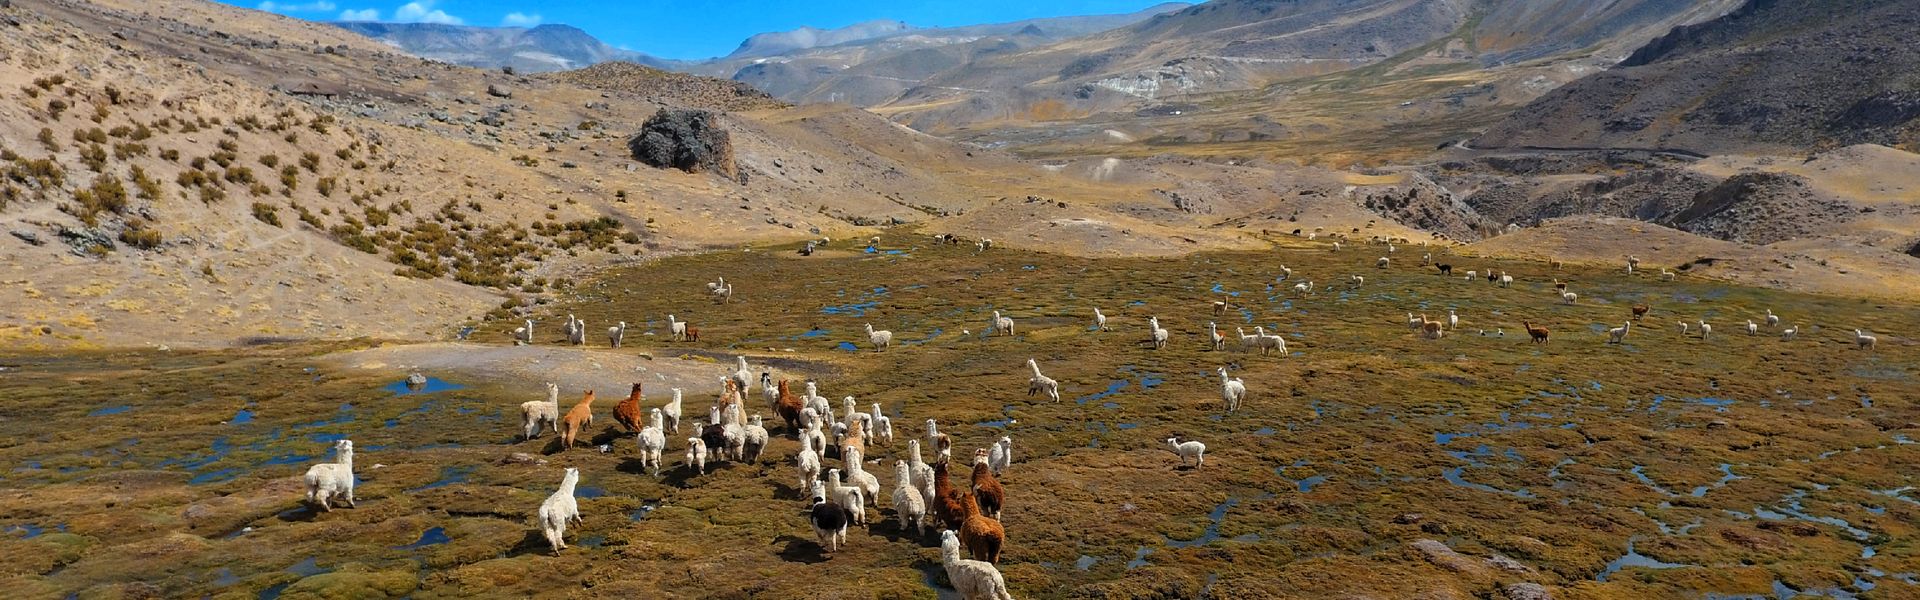 Troupeau d'alpagas - Puyca - Région de Cotahuasi - Pérou